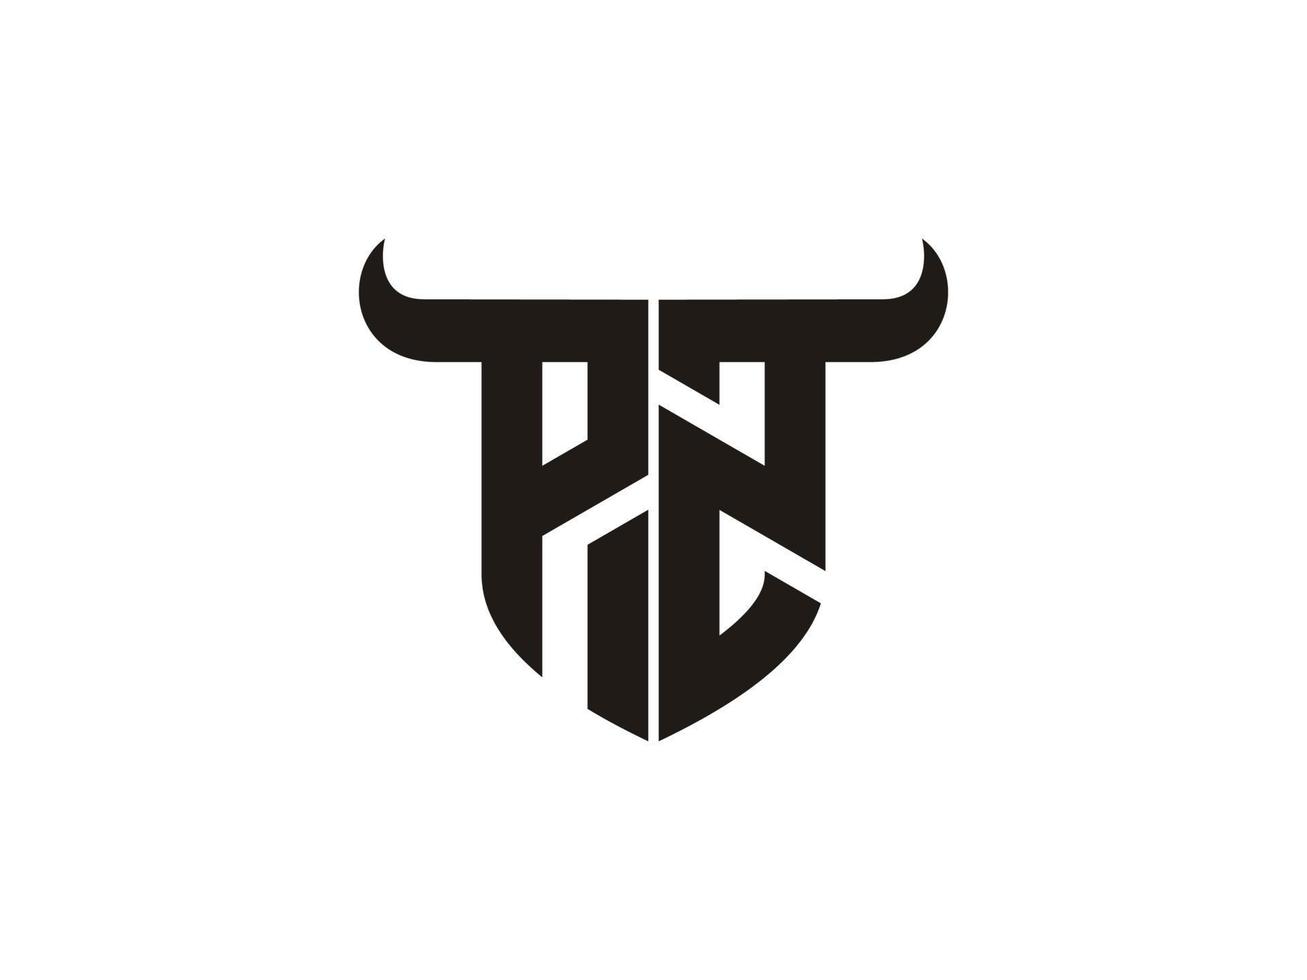 diseño inicial del logotipo pz bull. vector